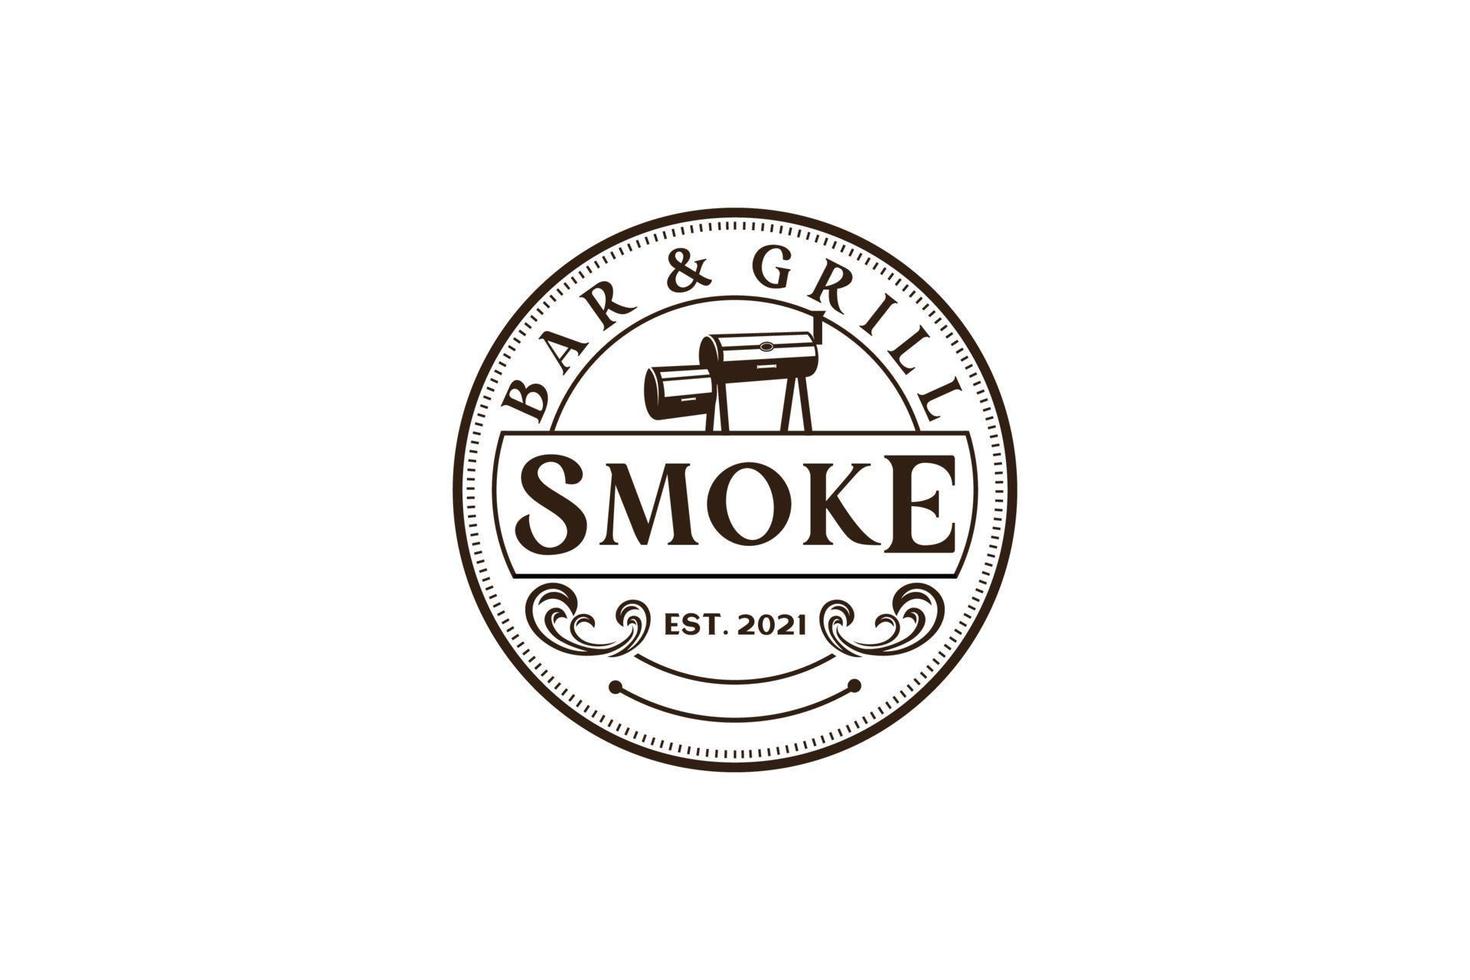 barbecue rustique rétro vintage, barbecue, vecteur de conception de logo de timbre d'étiquette de barbecue